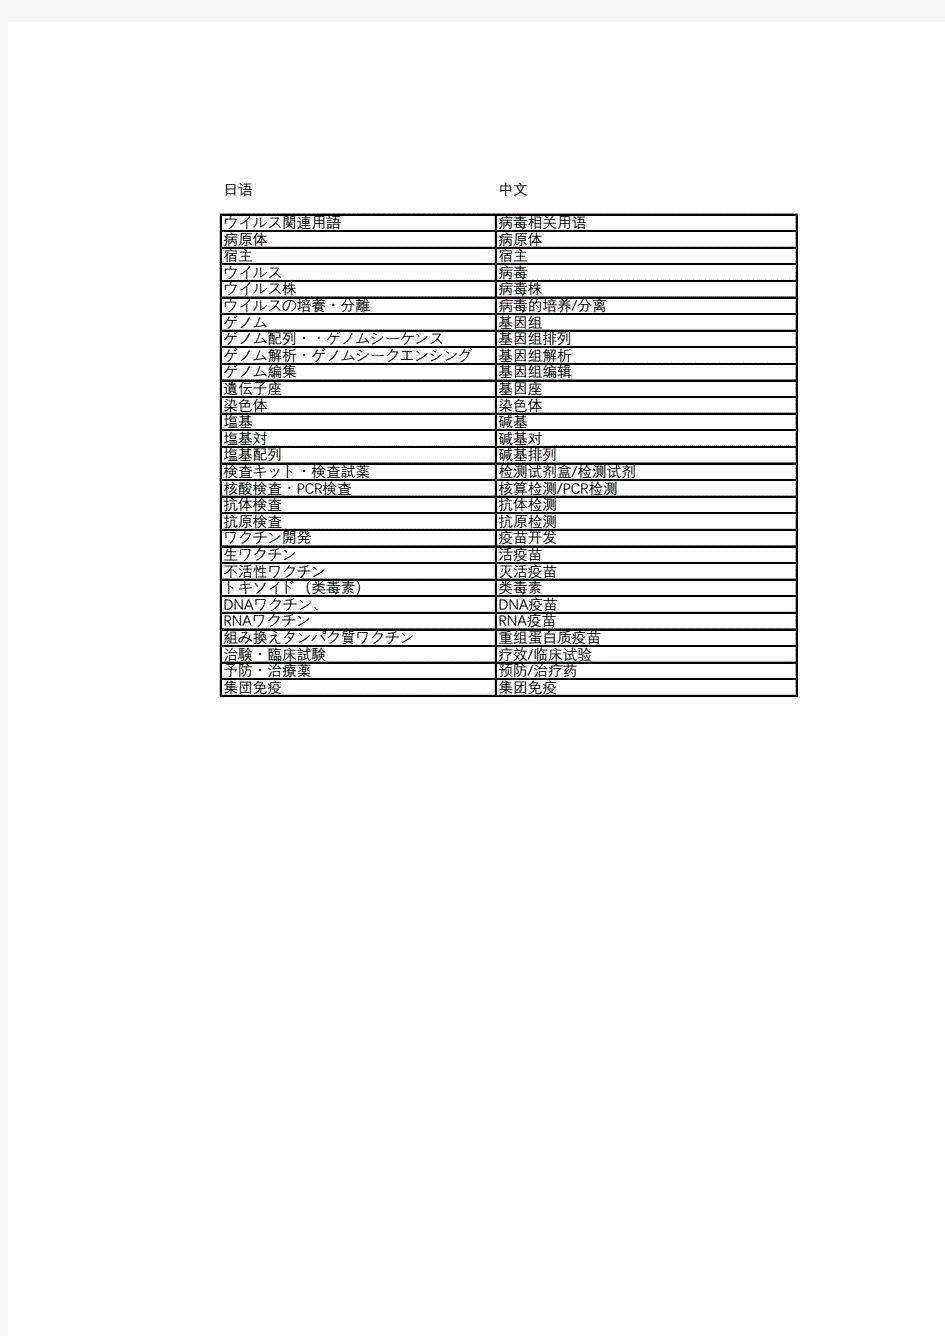 疫情相关用语中日文对照.pdf